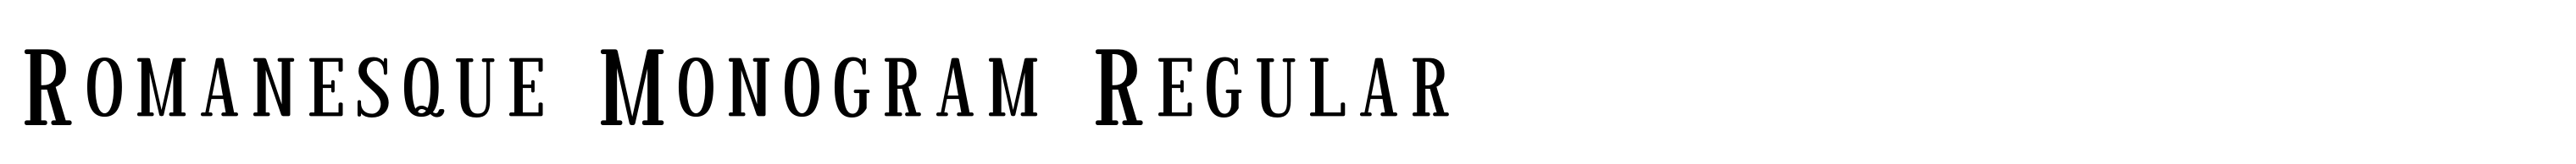 Romanesque Monogram Regular